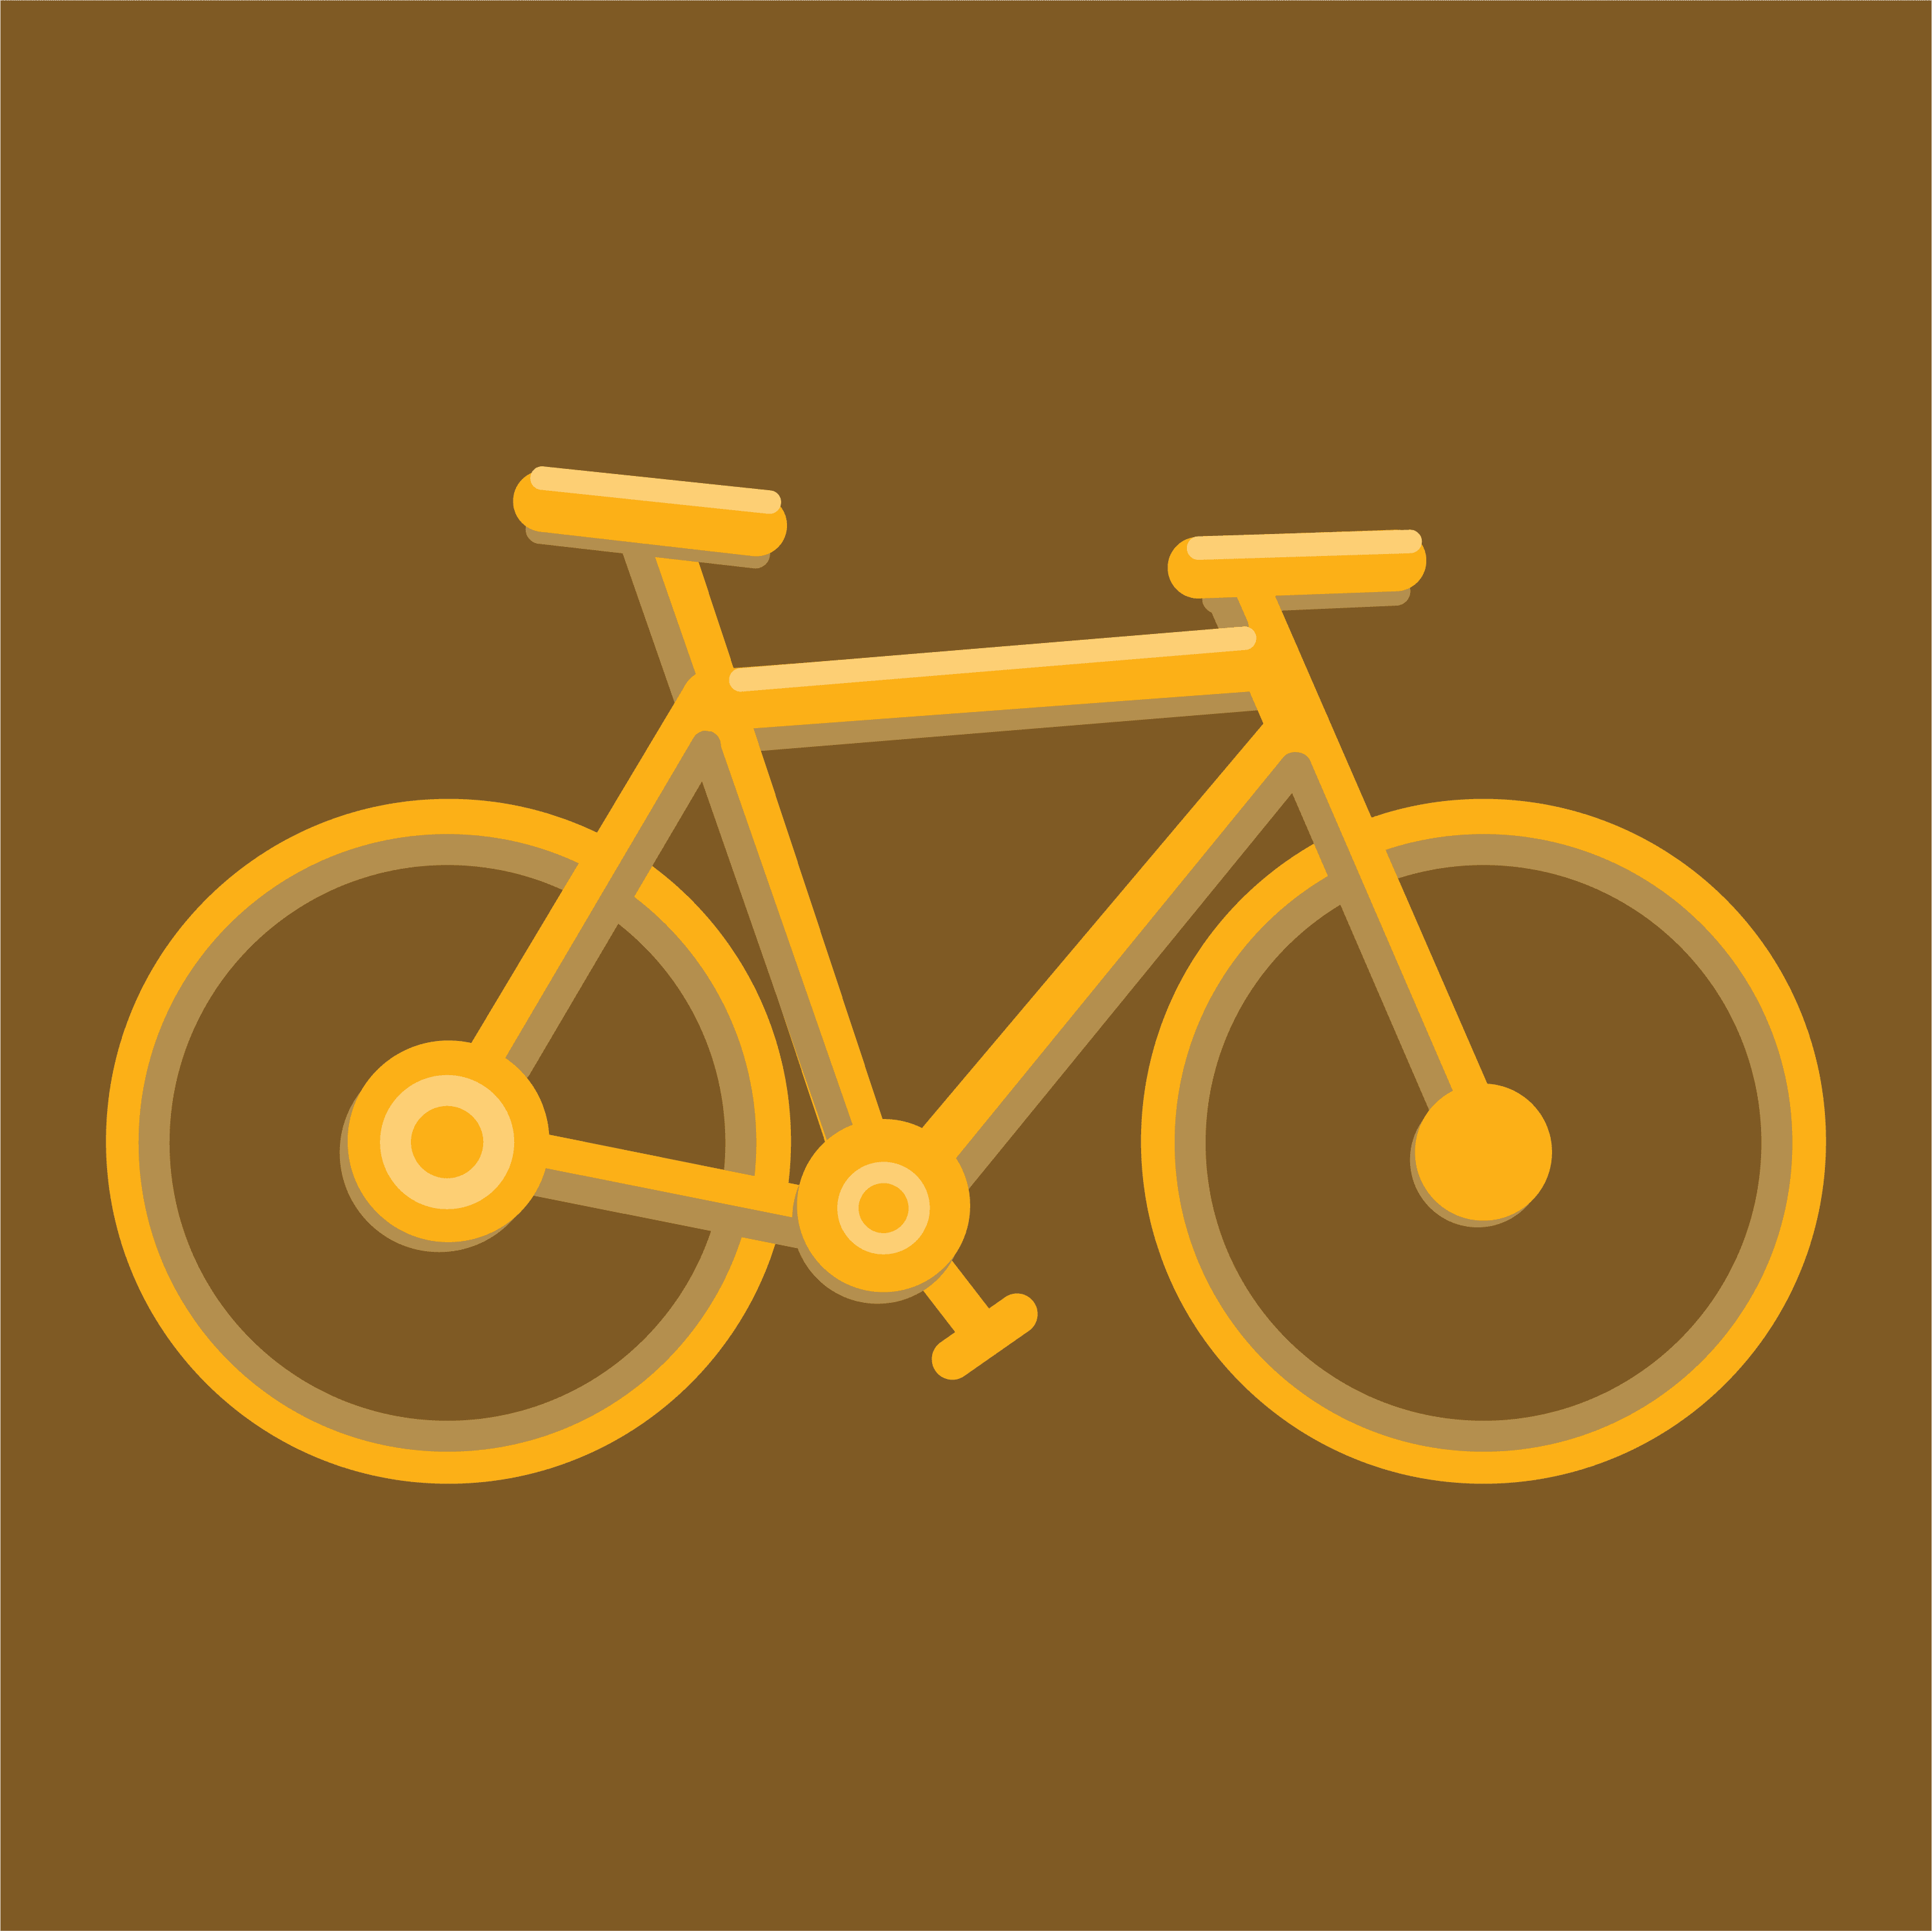 Manual item bicycle